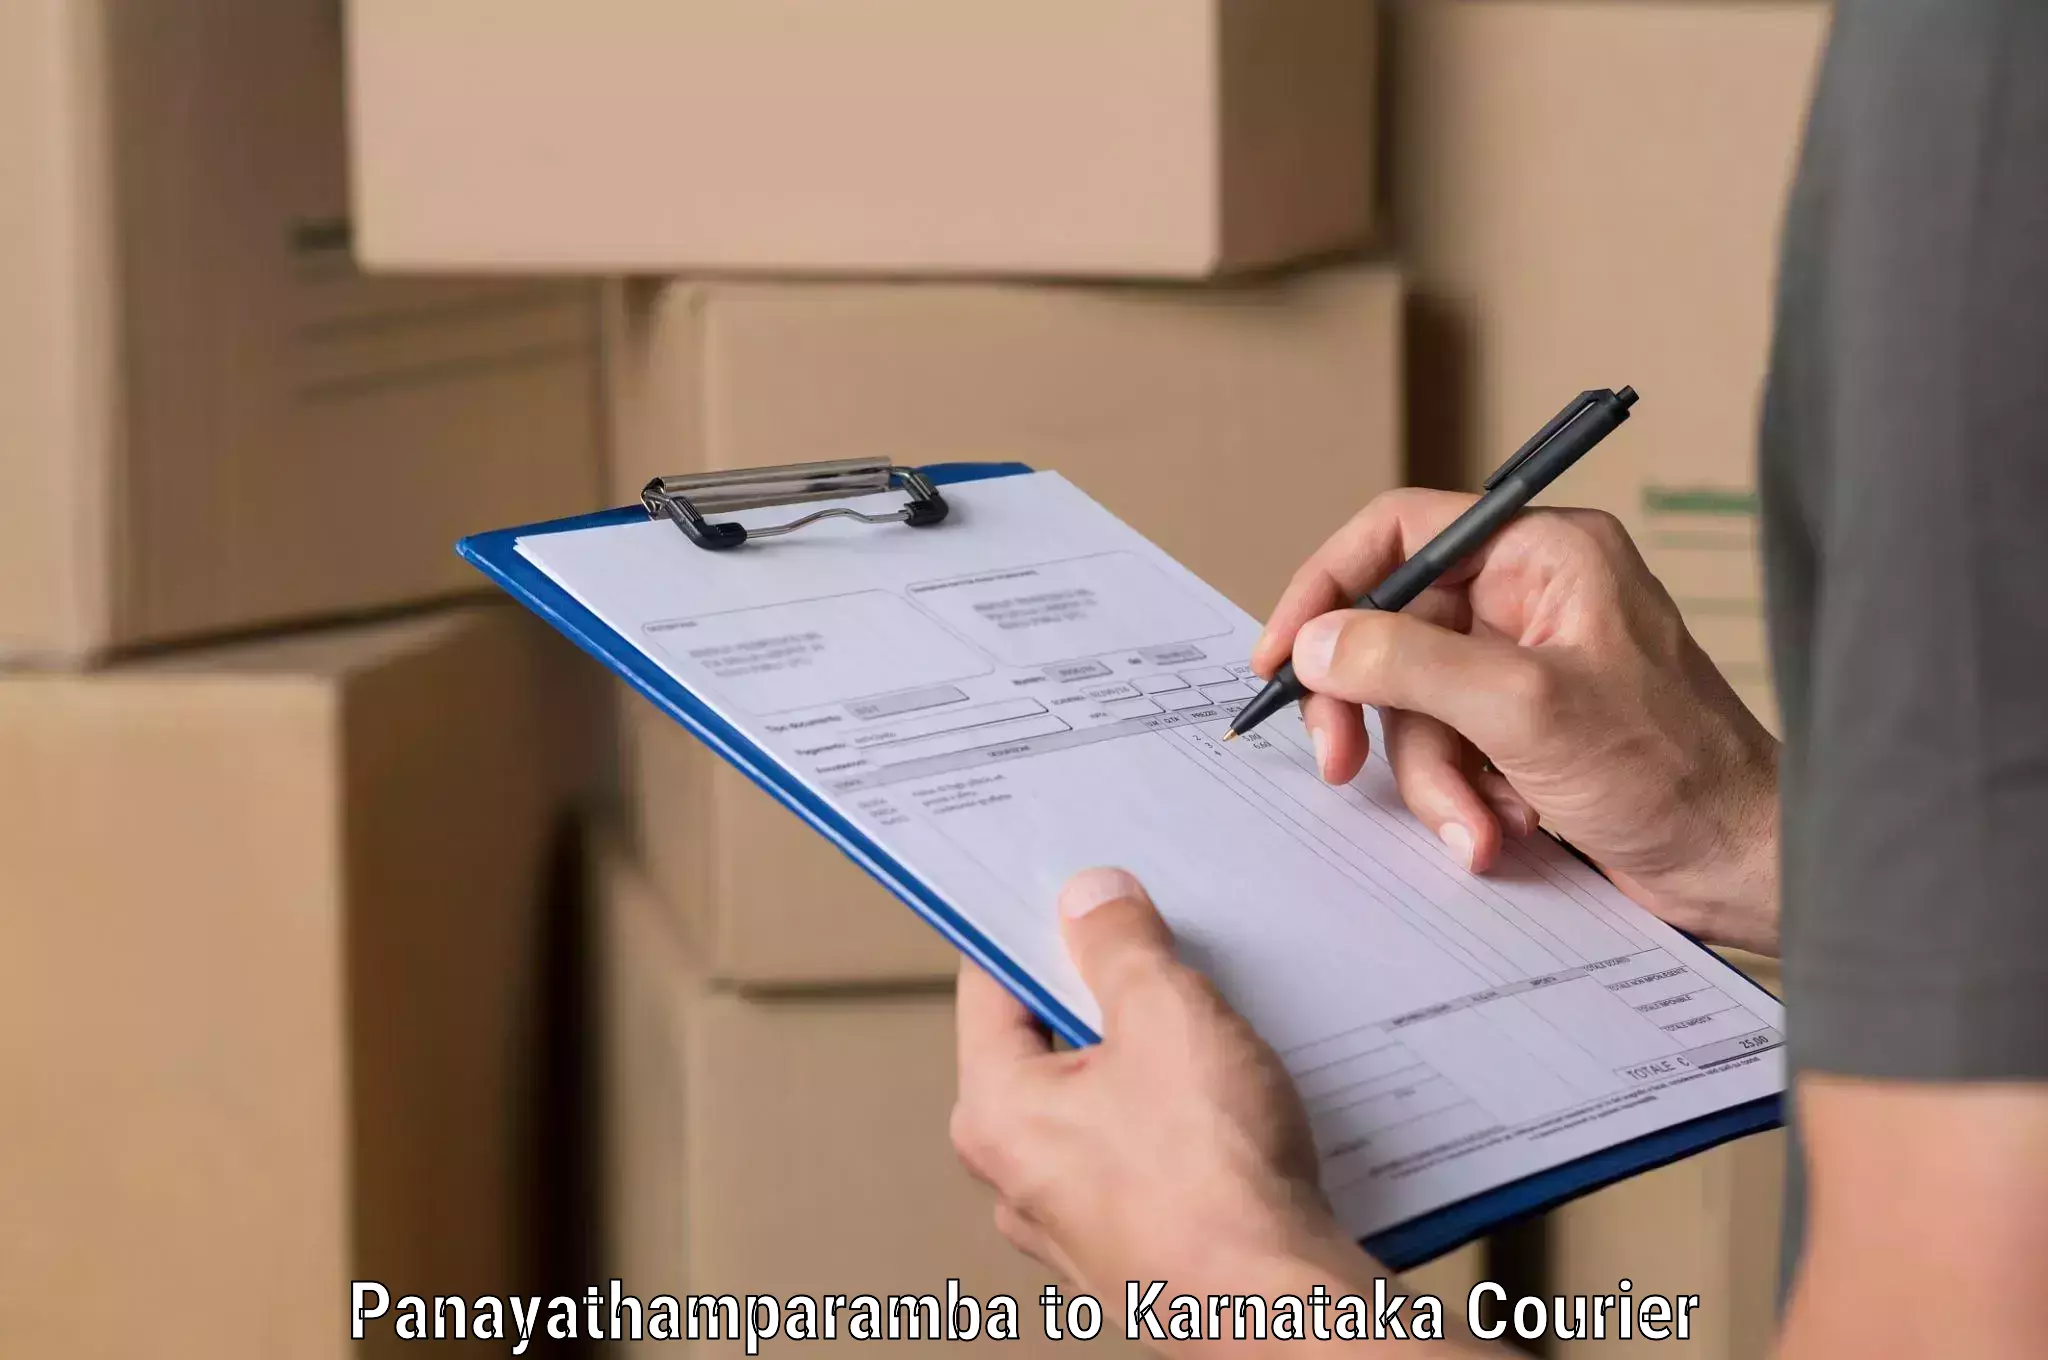 Subscription-based courier Panayathamparamba to Krishnarajanagara